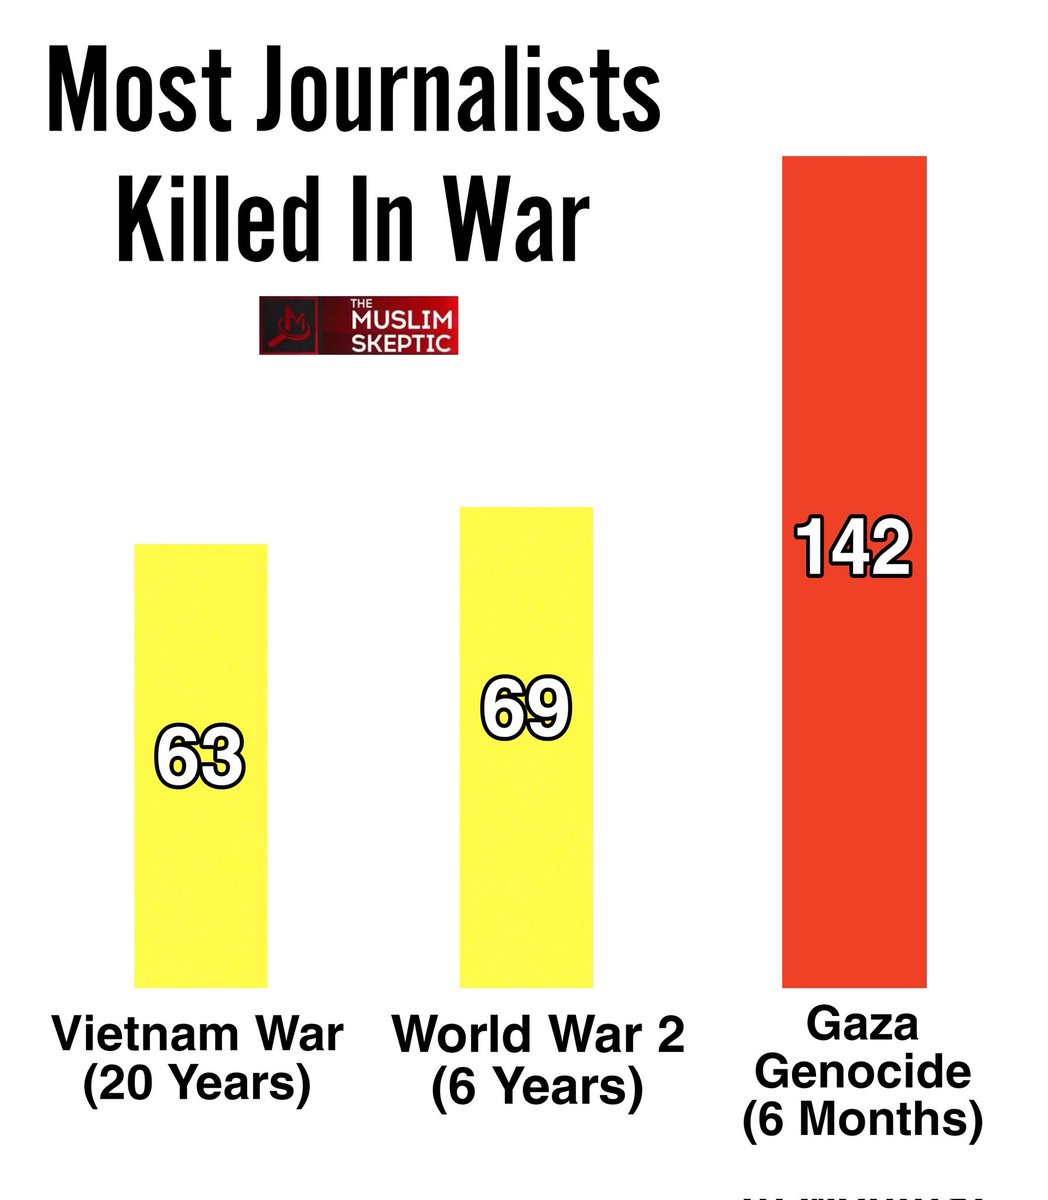 This is why Israel banned Al-Jazeera!